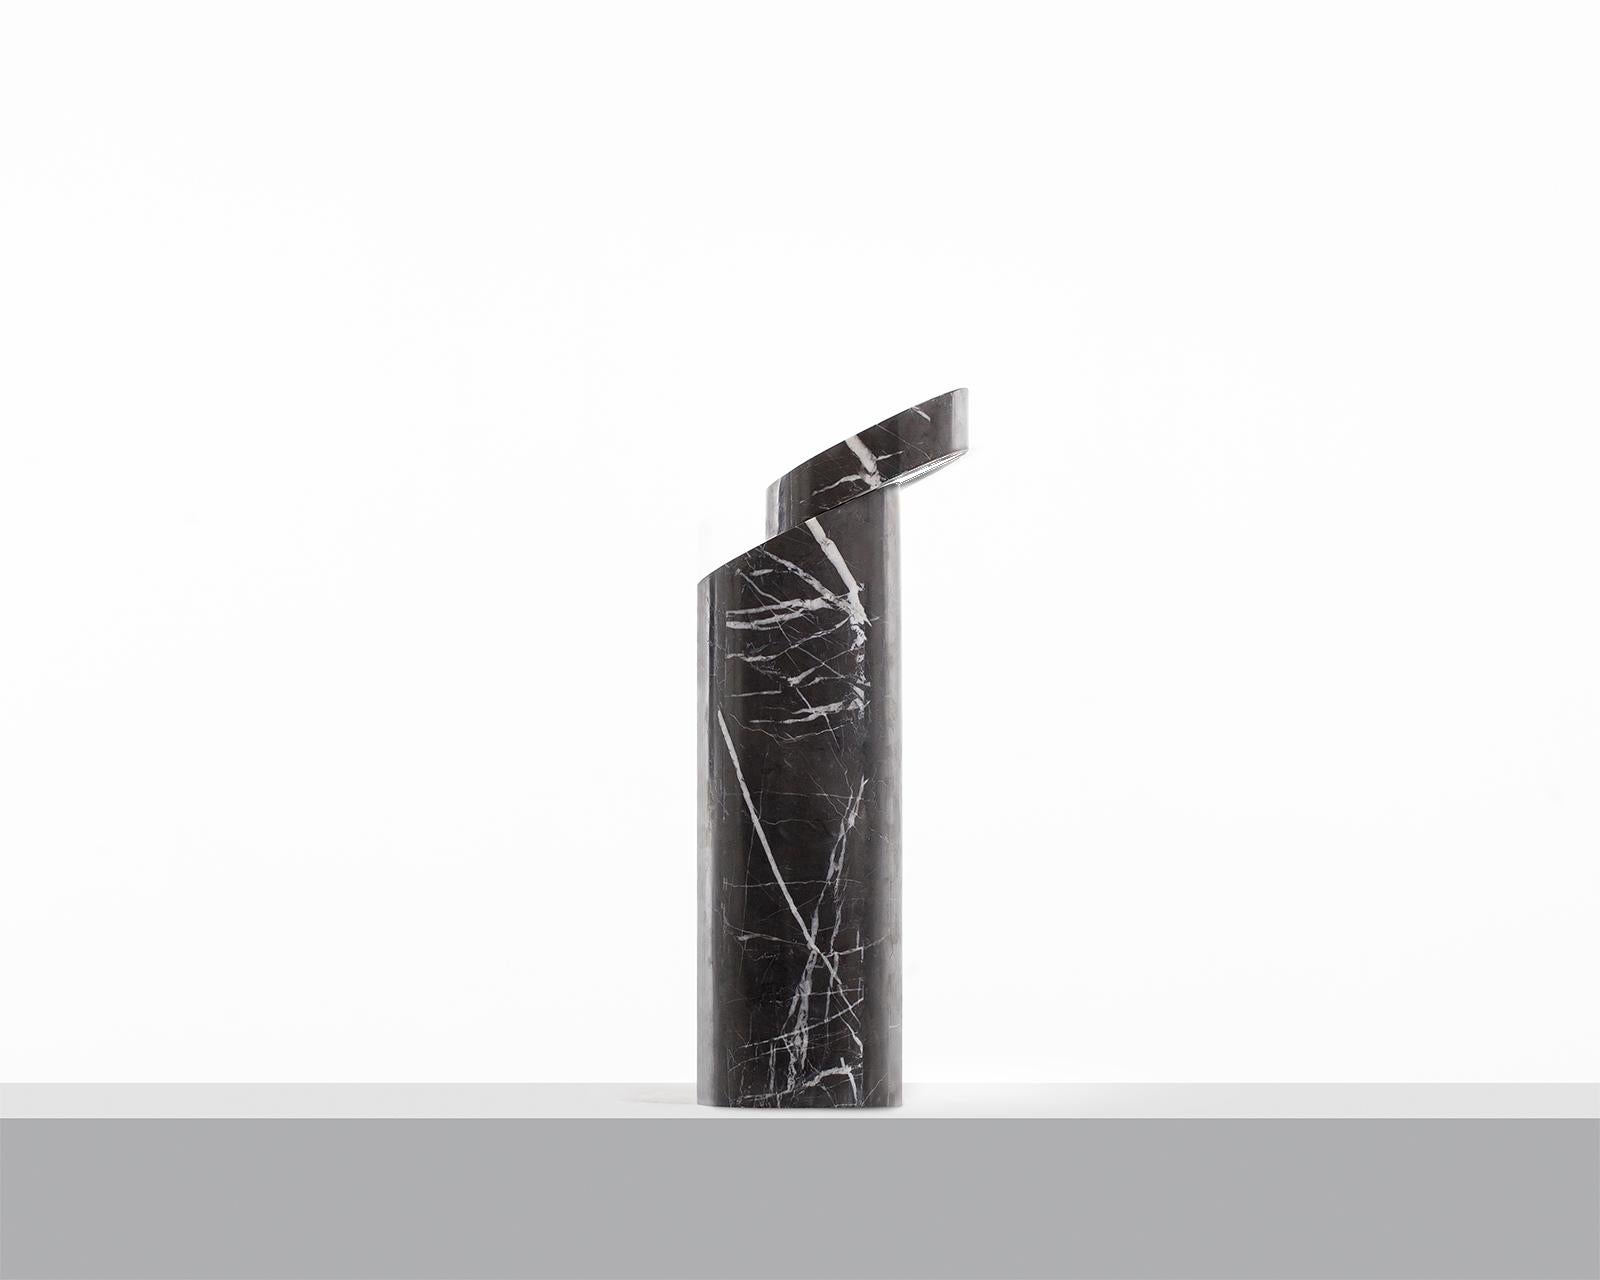 Lampe de table en marbre Doric de Carlos Aucejo
Dimensions : 44 x 17 x 17 cm : 44 x 17 x 17 cm
MATERIAL : Marbre gris Pietra

Pietra grey, (marbre iranien). Inspiré d'une colonne grecque dorique définie par la simplicité et la robustesse de ses